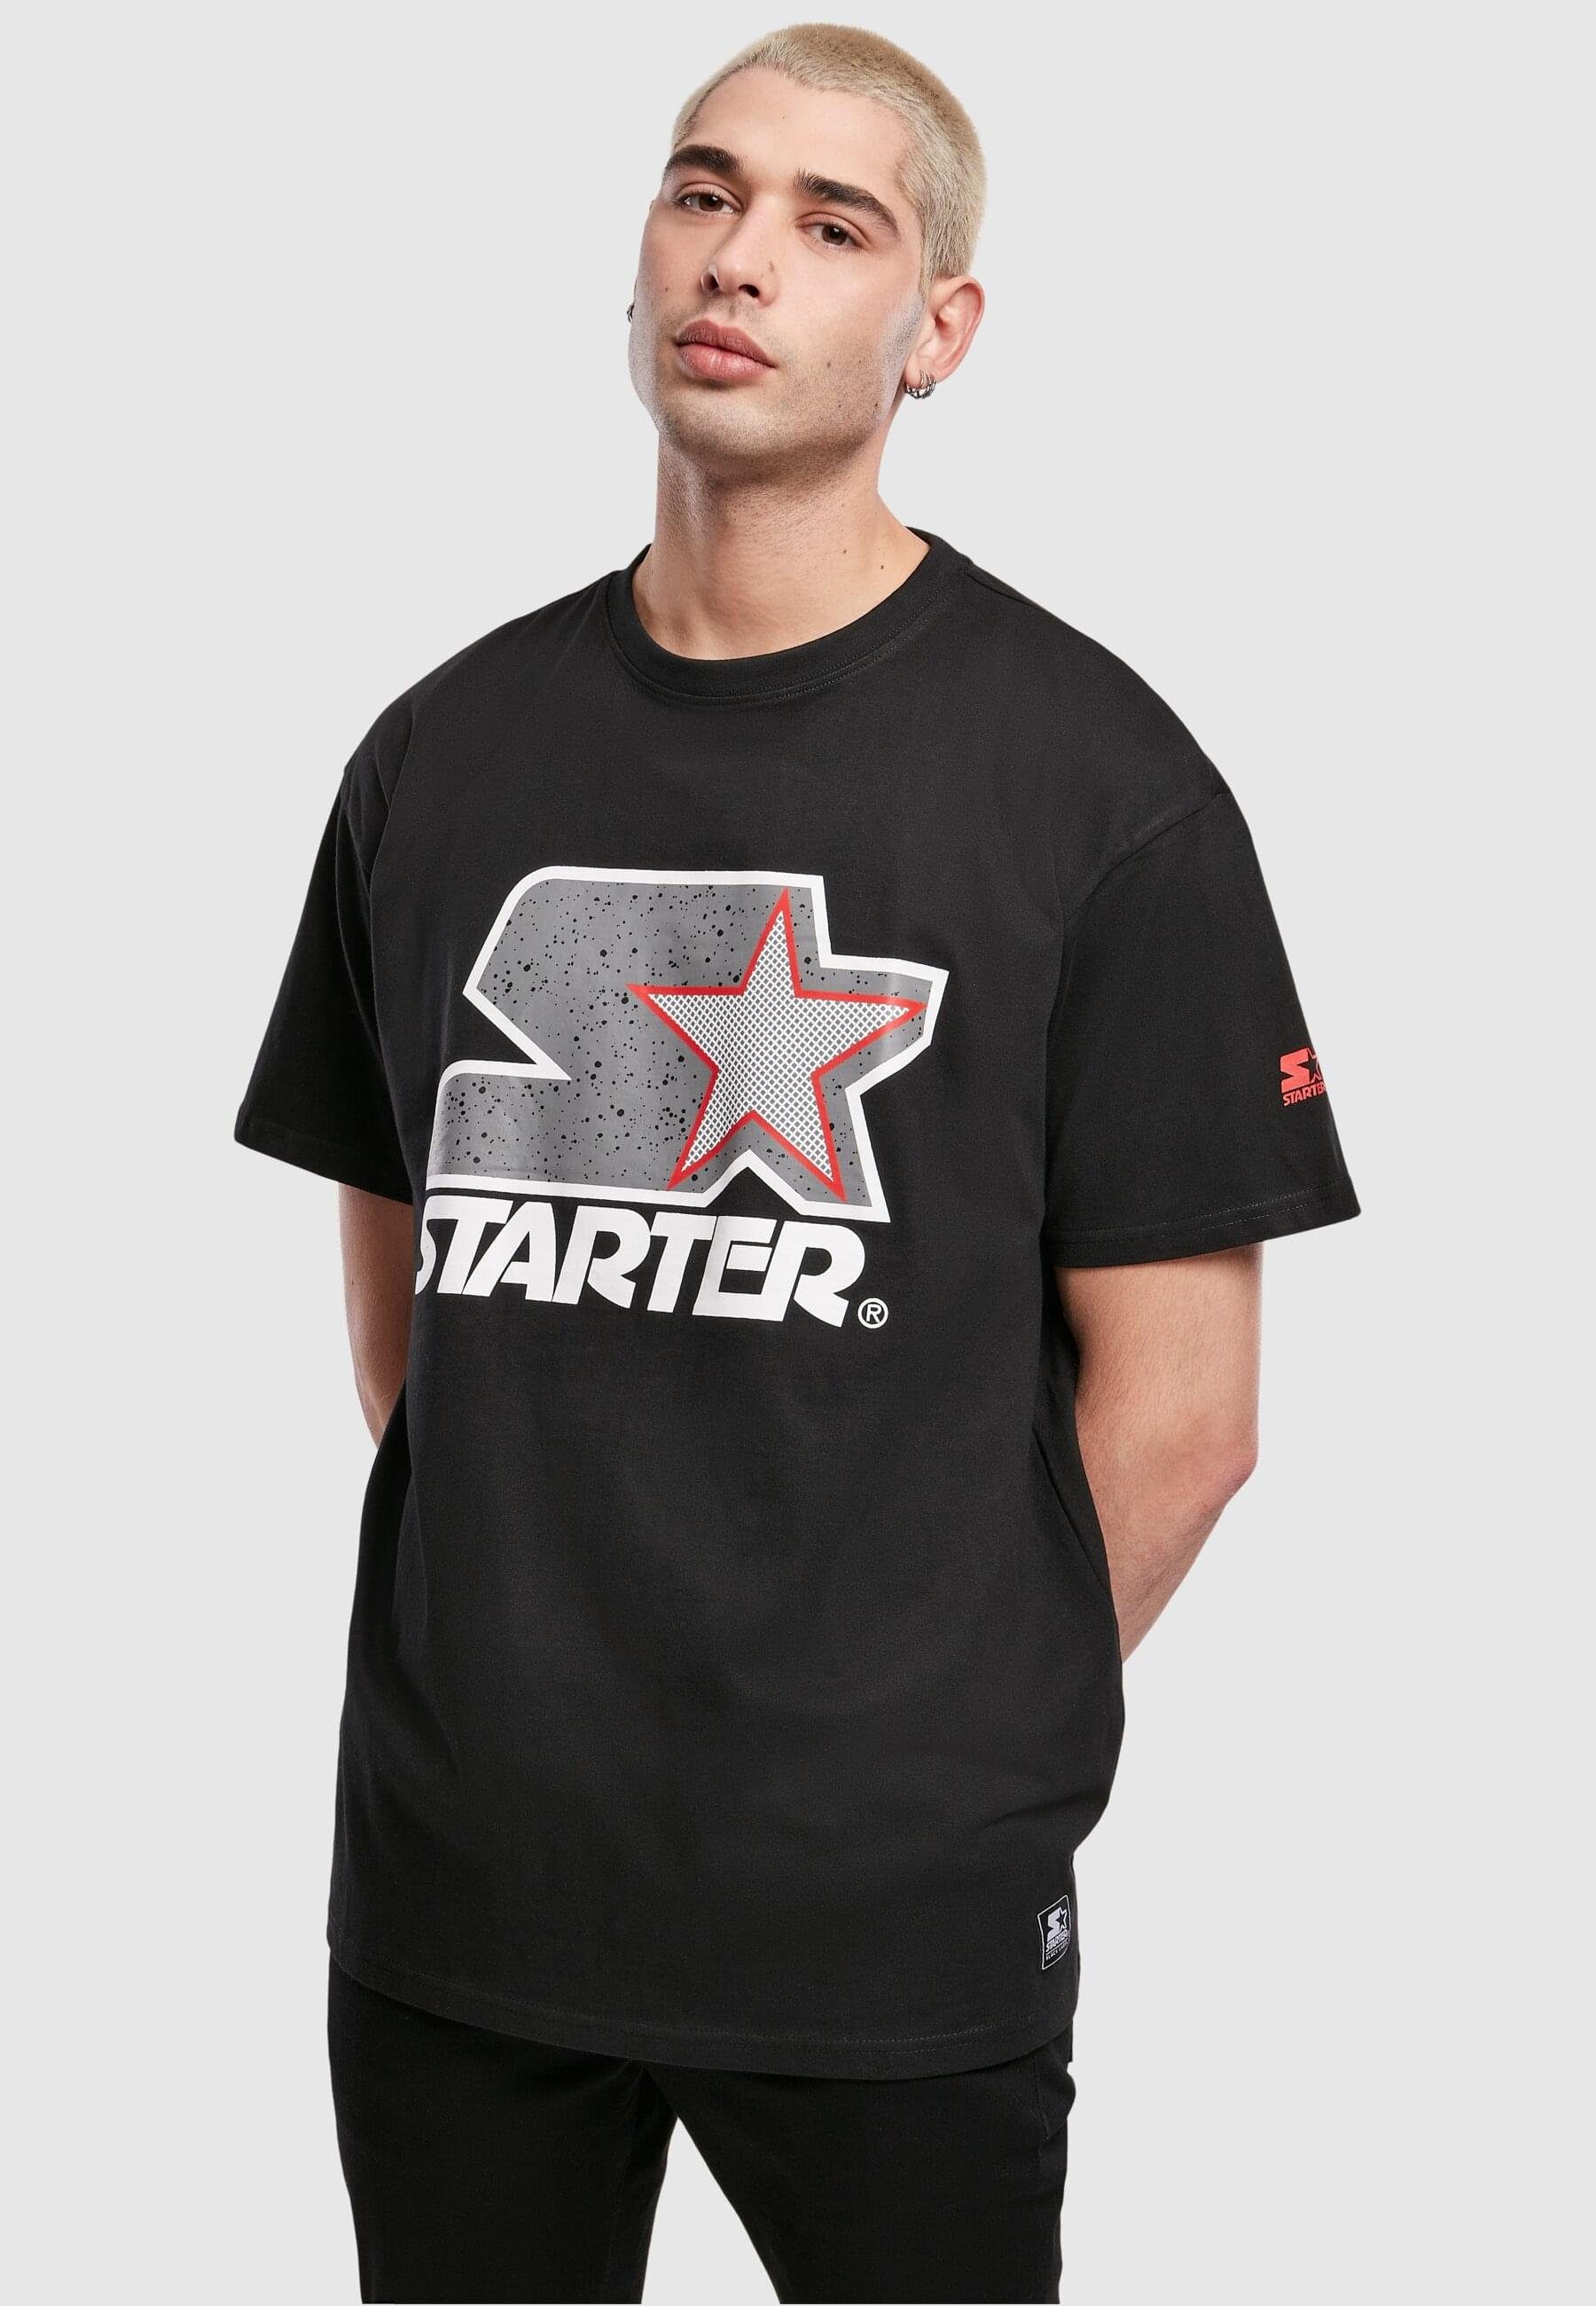 Tee Logo Starter black/grey Multicolored Starter T-Shirt Herren (1-tlg)